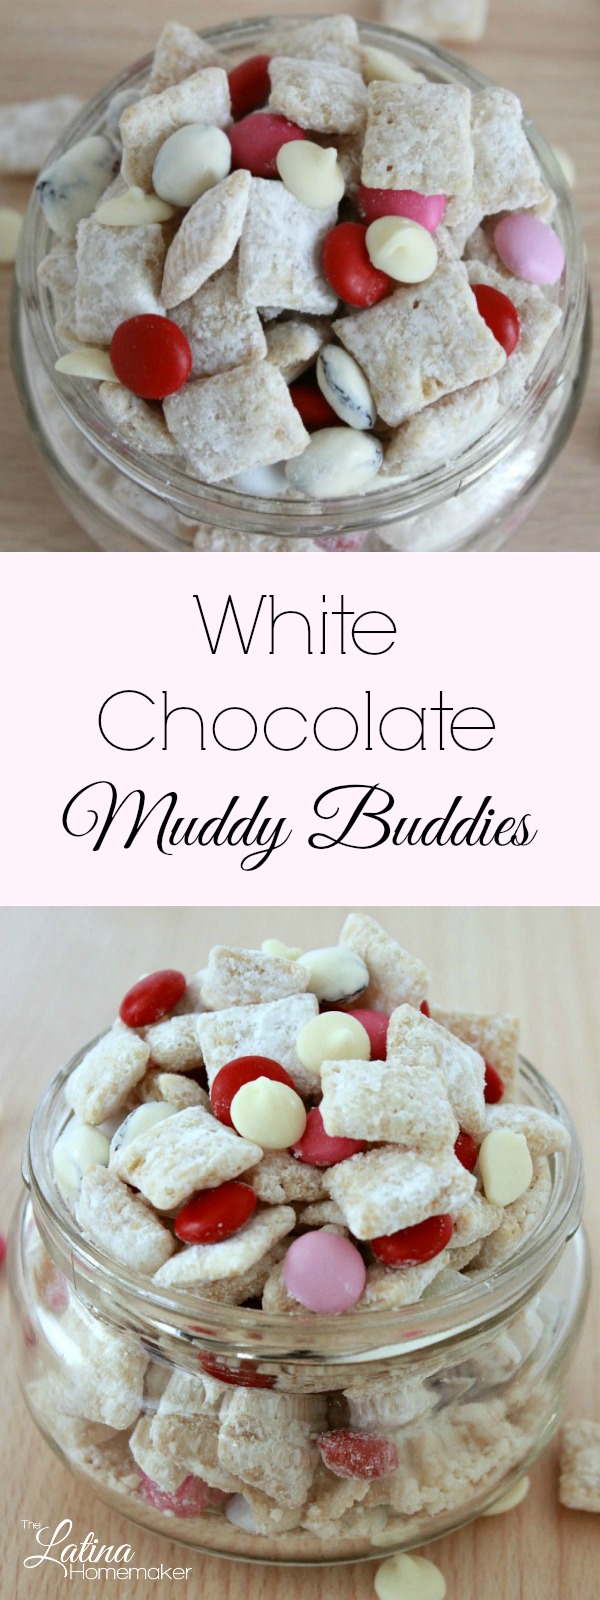 White Chocolate Muddy Buddies - The Latina Homemaker